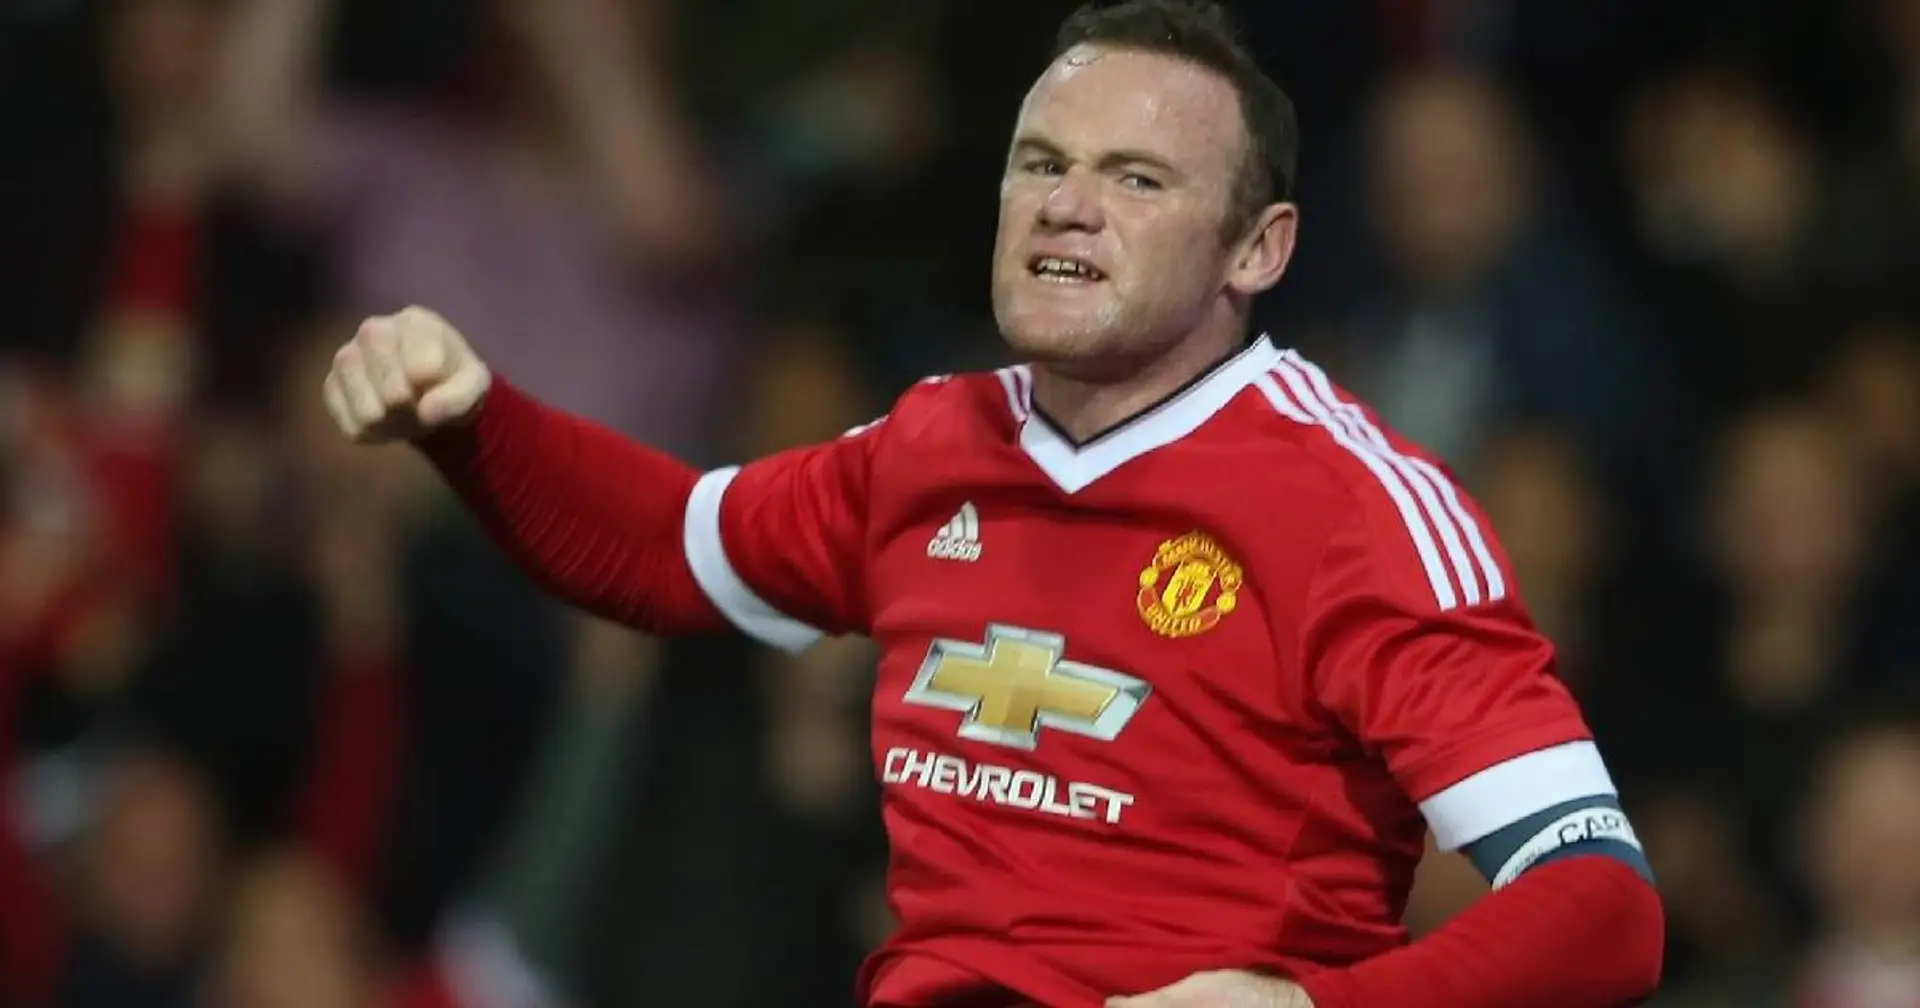 "Un régal à regarder", "Il se serait parfaitement intégrer": les fans réagissent au transfert de rêve de Wayne Rooney au Barça